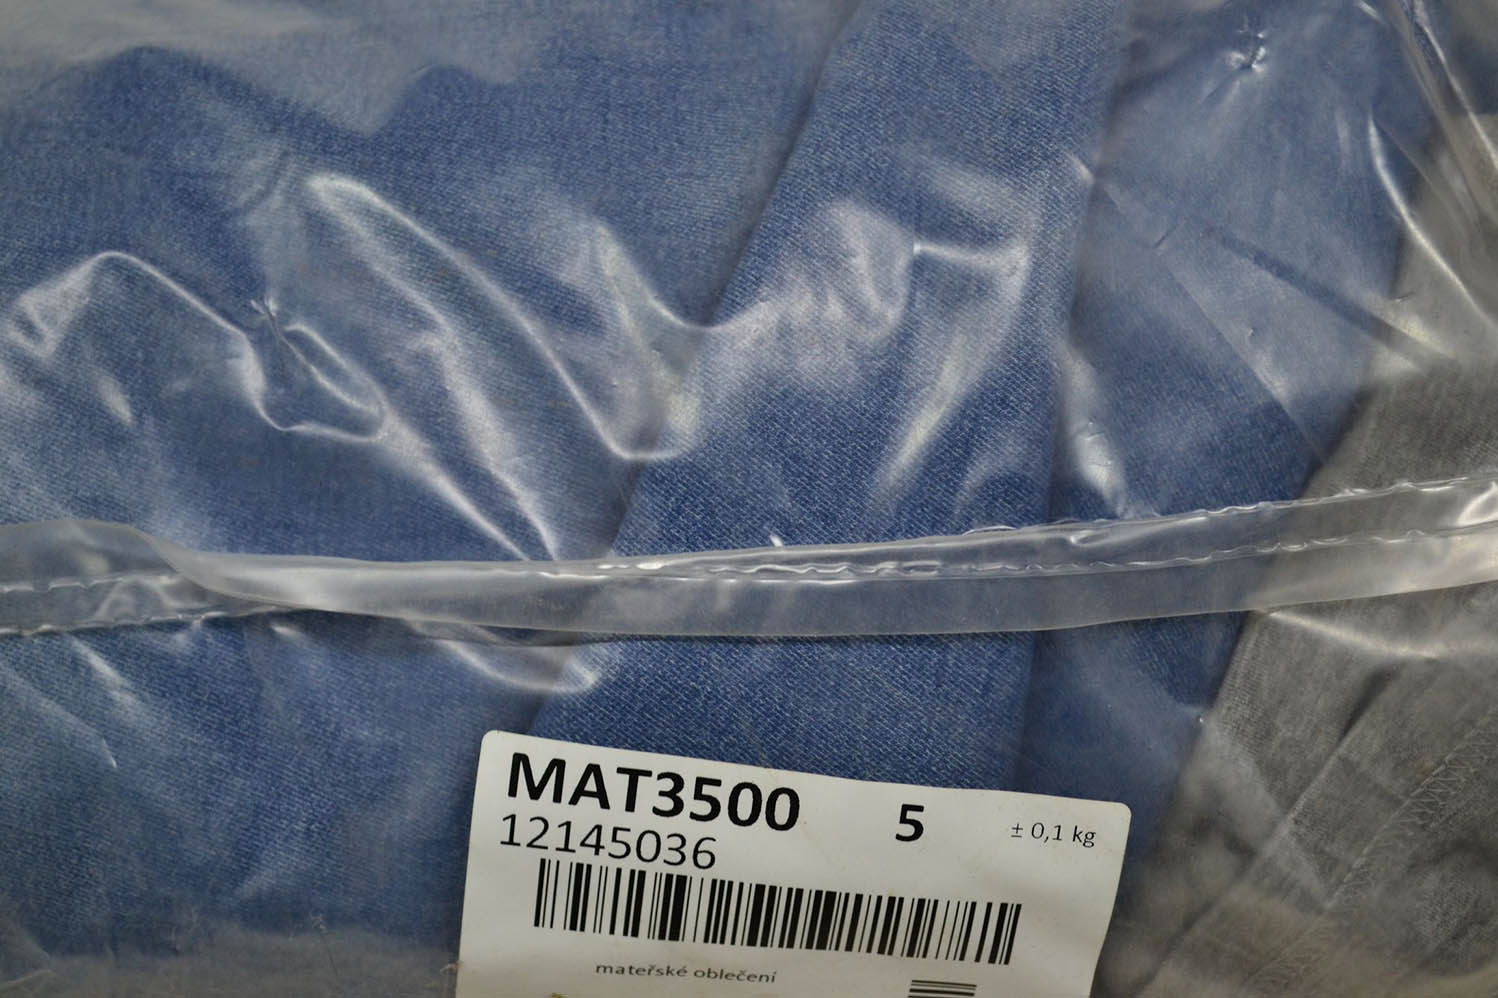 MAT3500 Одежда для беременных; код мешка 12145036